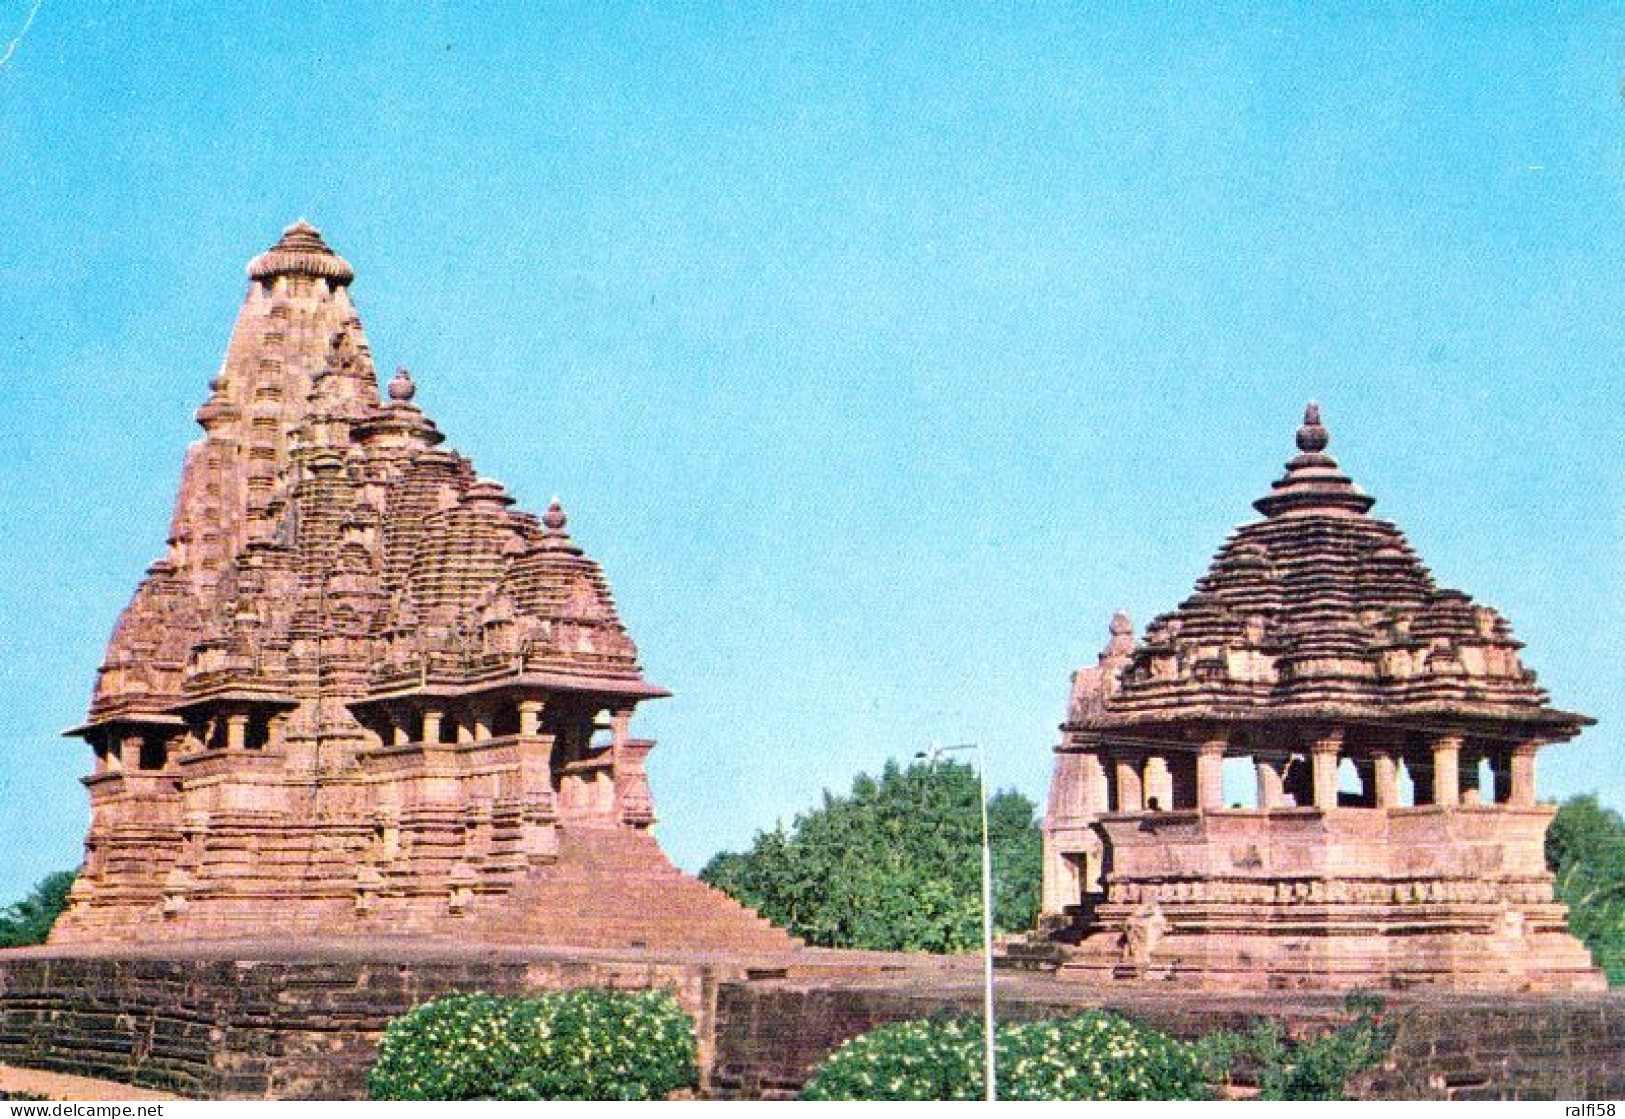 1 AK Indien * Die Tempel Jagdambi Und Nandi In Khajuraho 11./12. Jh. - Seit 1986 UNESCO Weltkulturerbe * - India